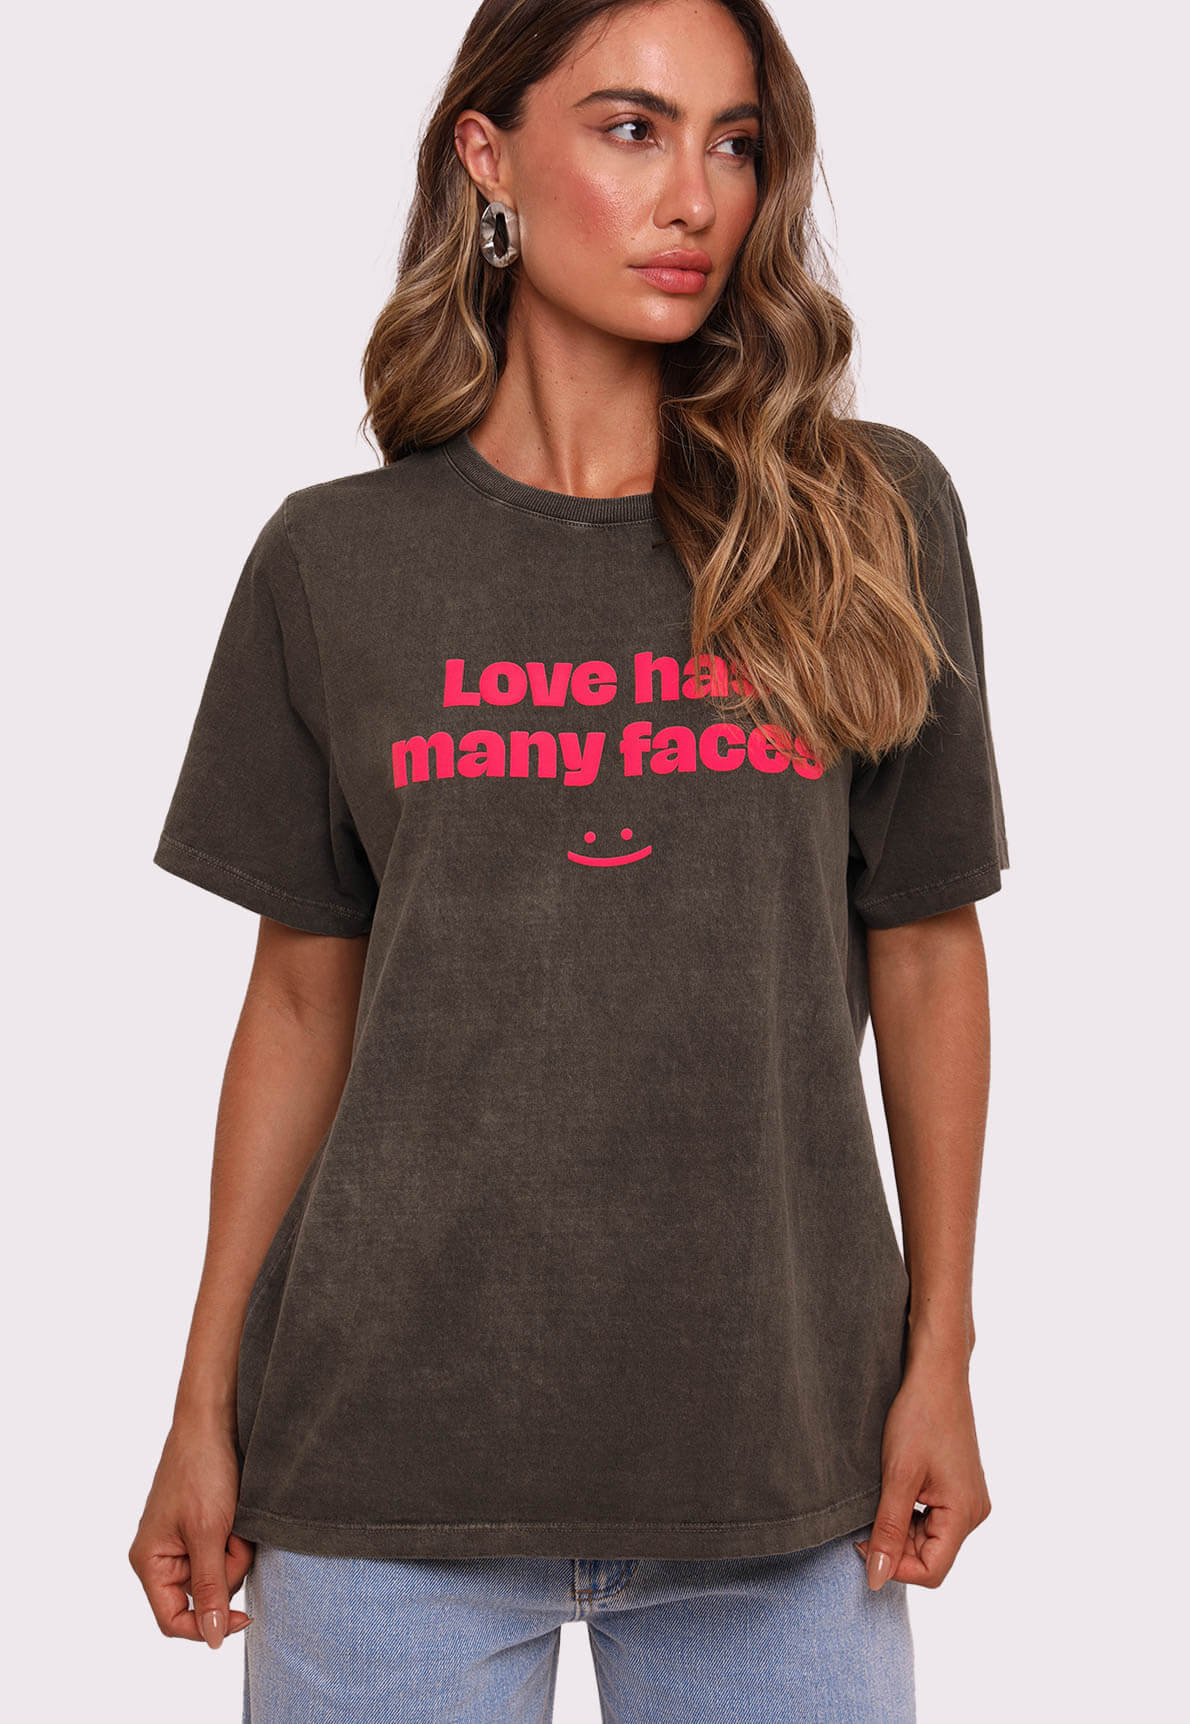 42983-t-shirt-love-has-many-faces-mundo-lolita-1